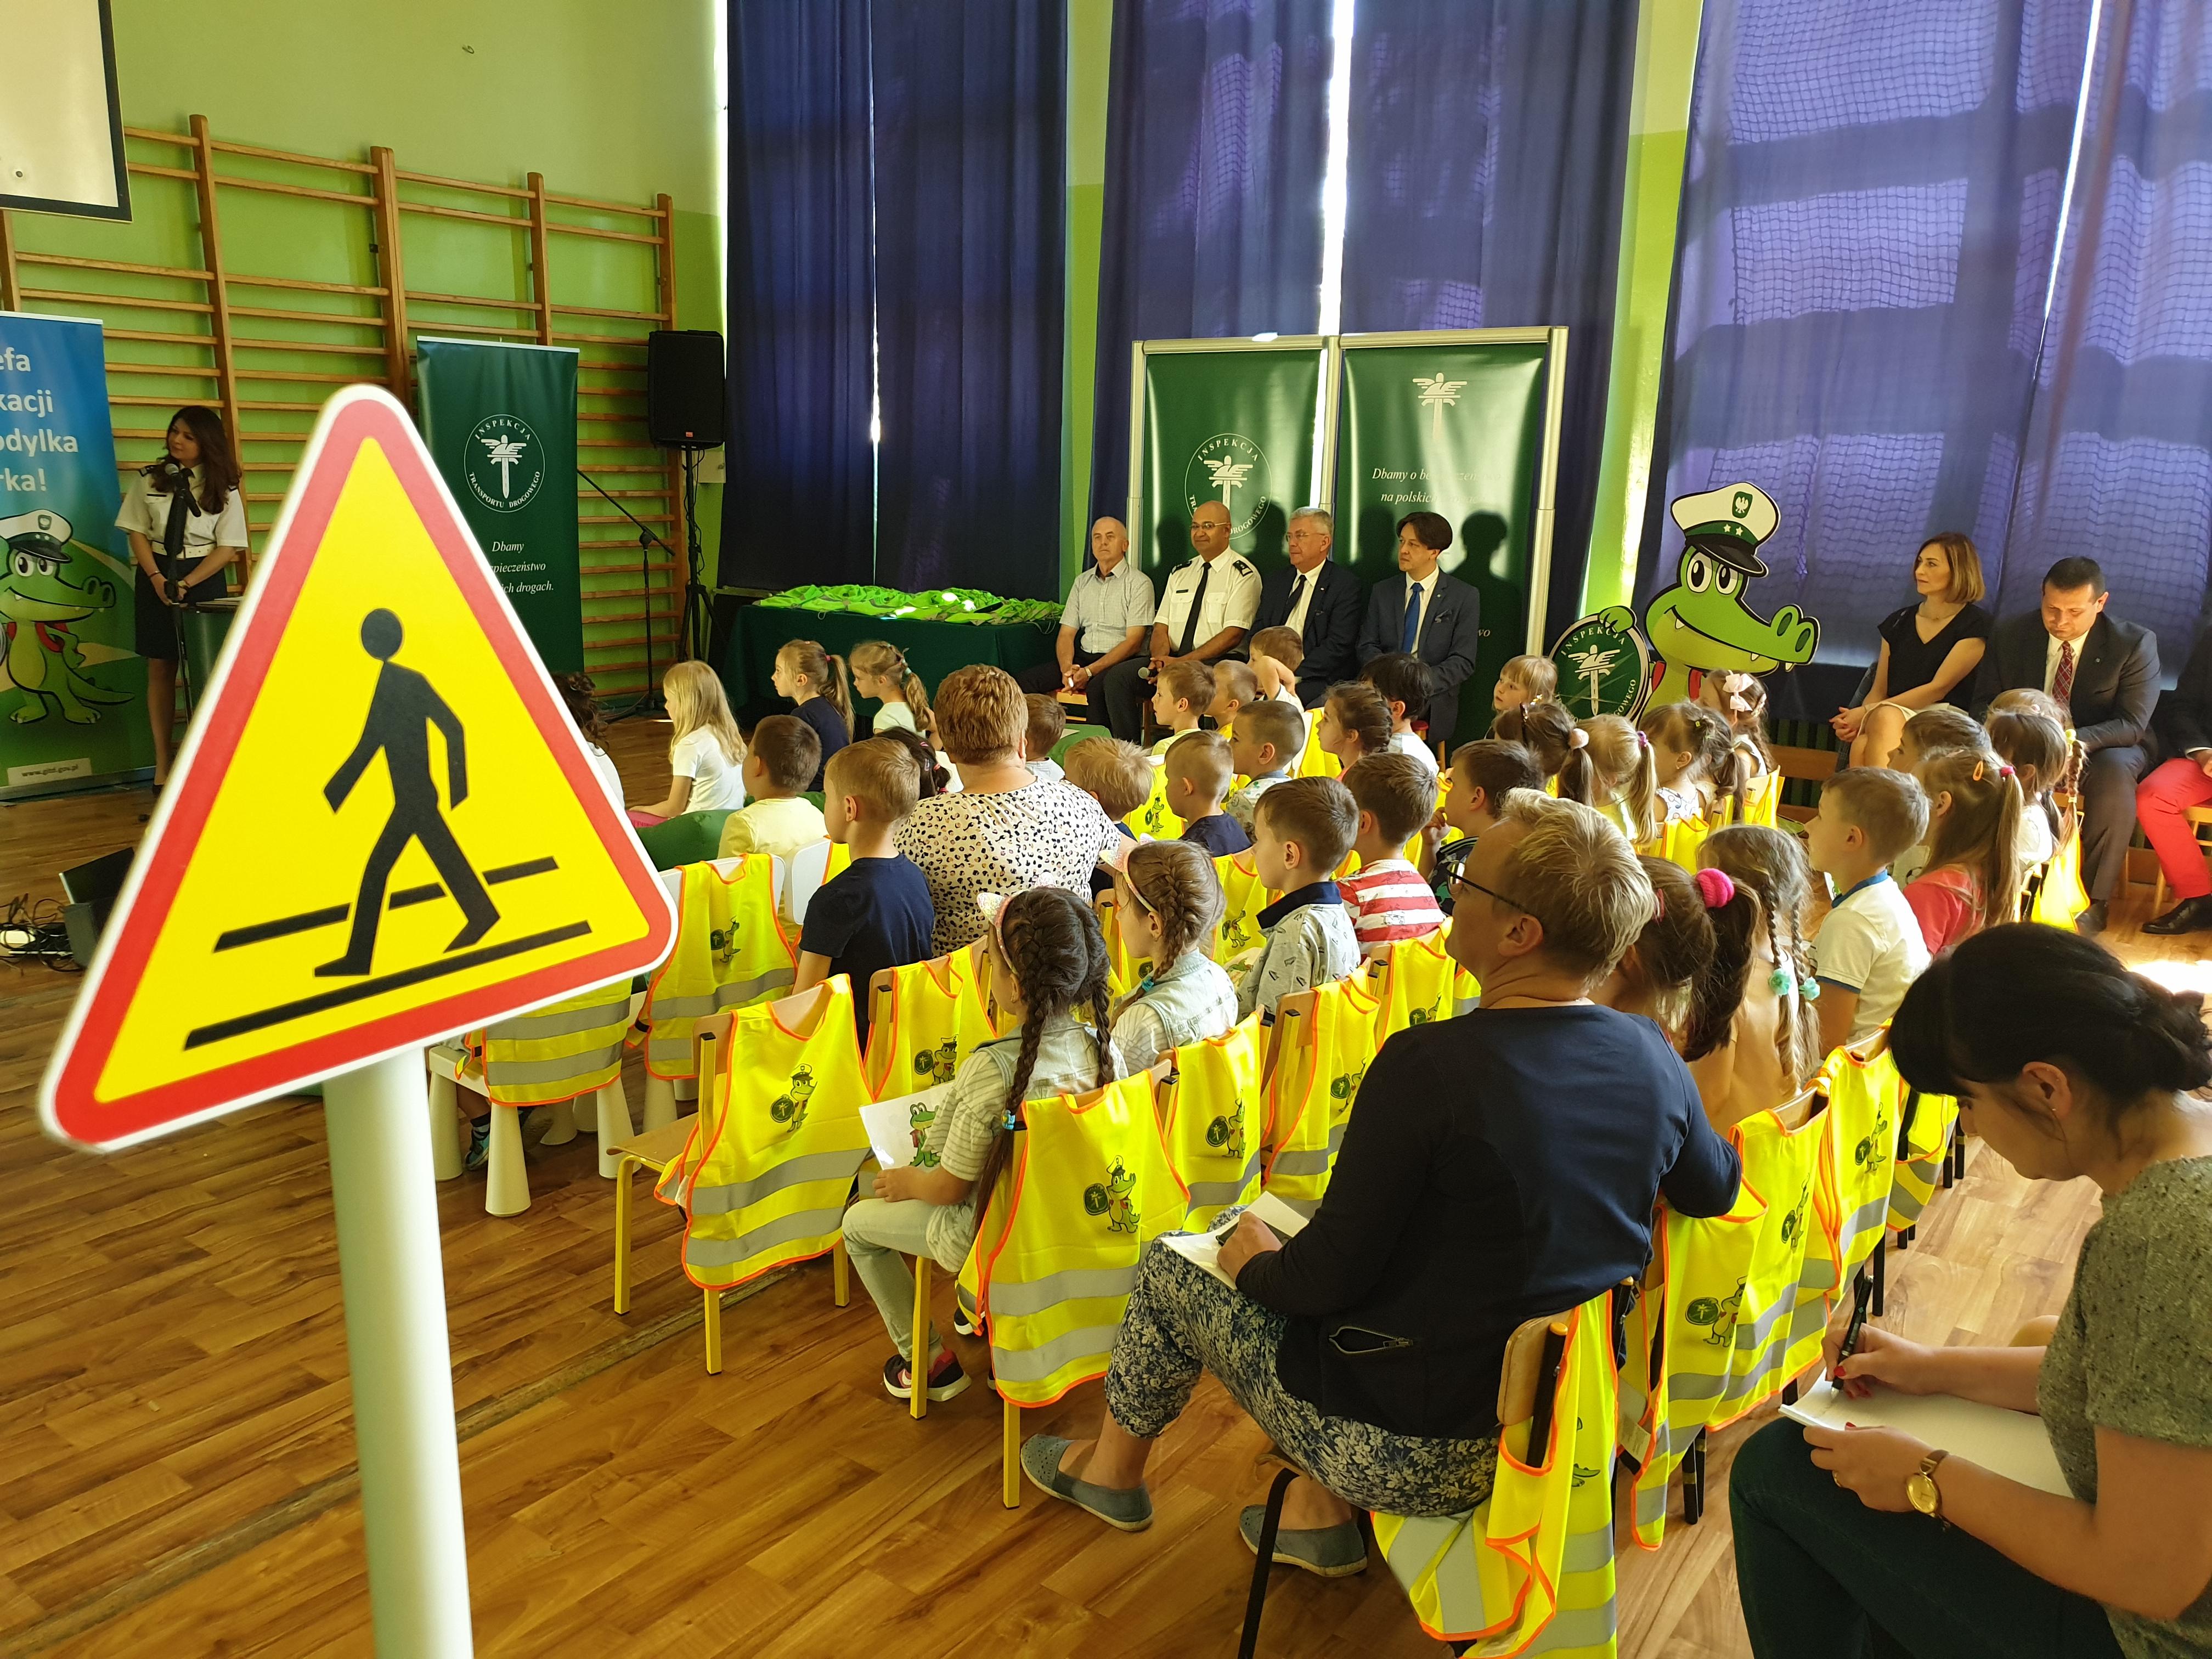 Dzieci siedzące na krzesełkach w tle prowadzący lekcję